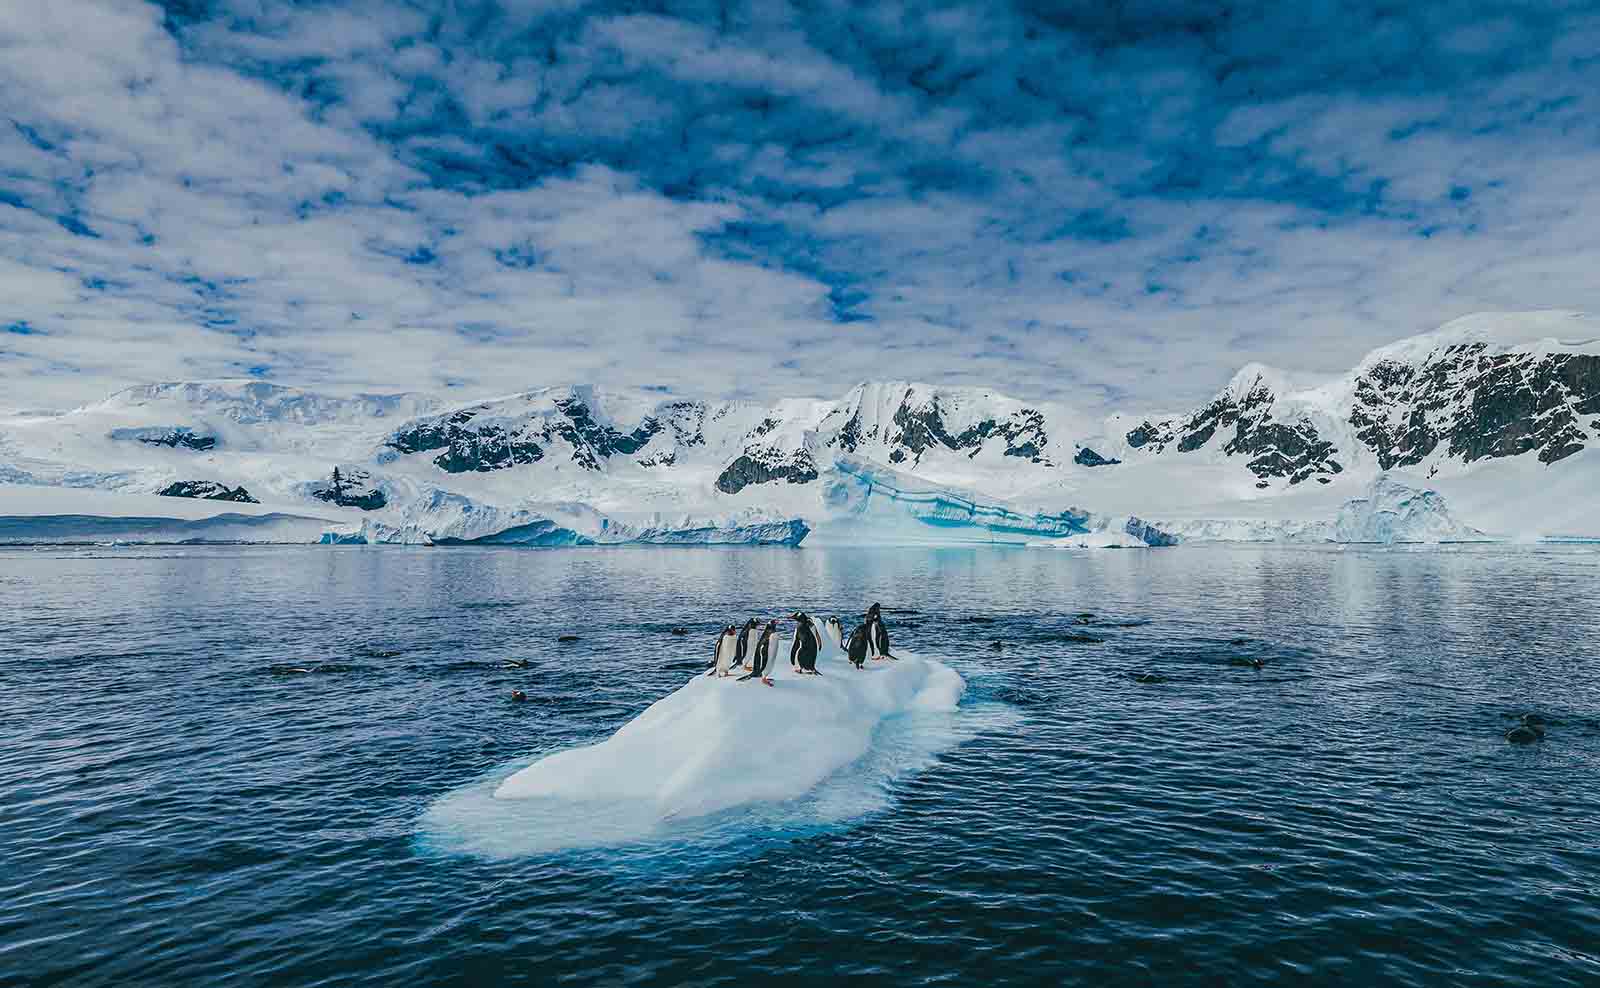  Antarctica | Exploring the Top Ten Antarctica Attractions for Travelers 